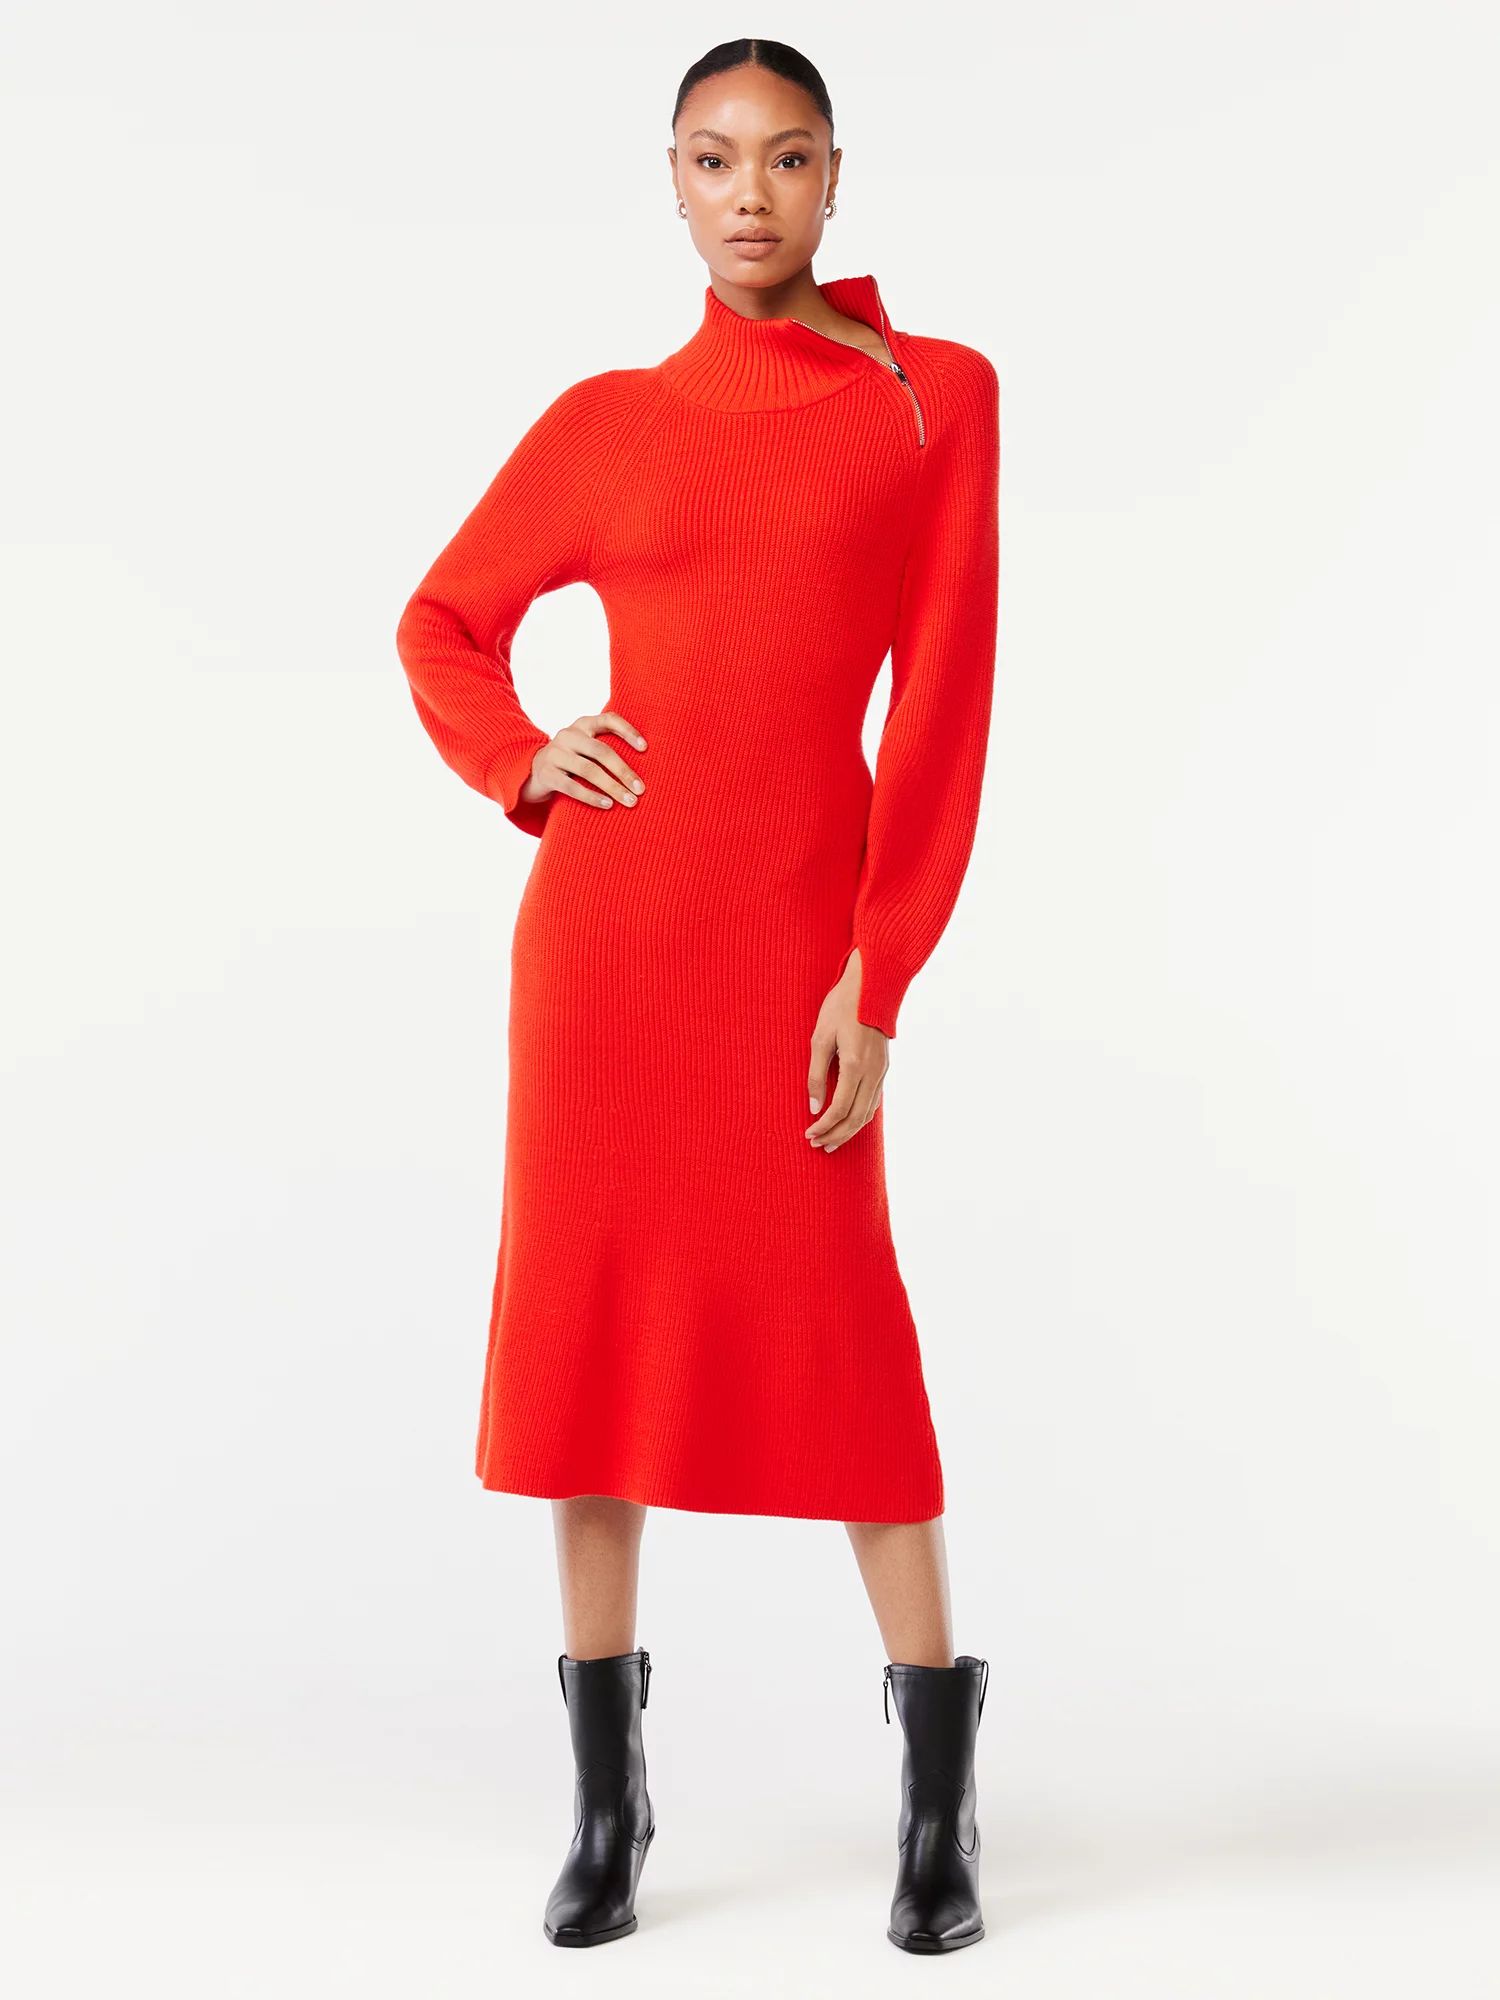 Scoop Women's Ribbed Sweater Dress with Zip Turtleneck | Walmart (US)